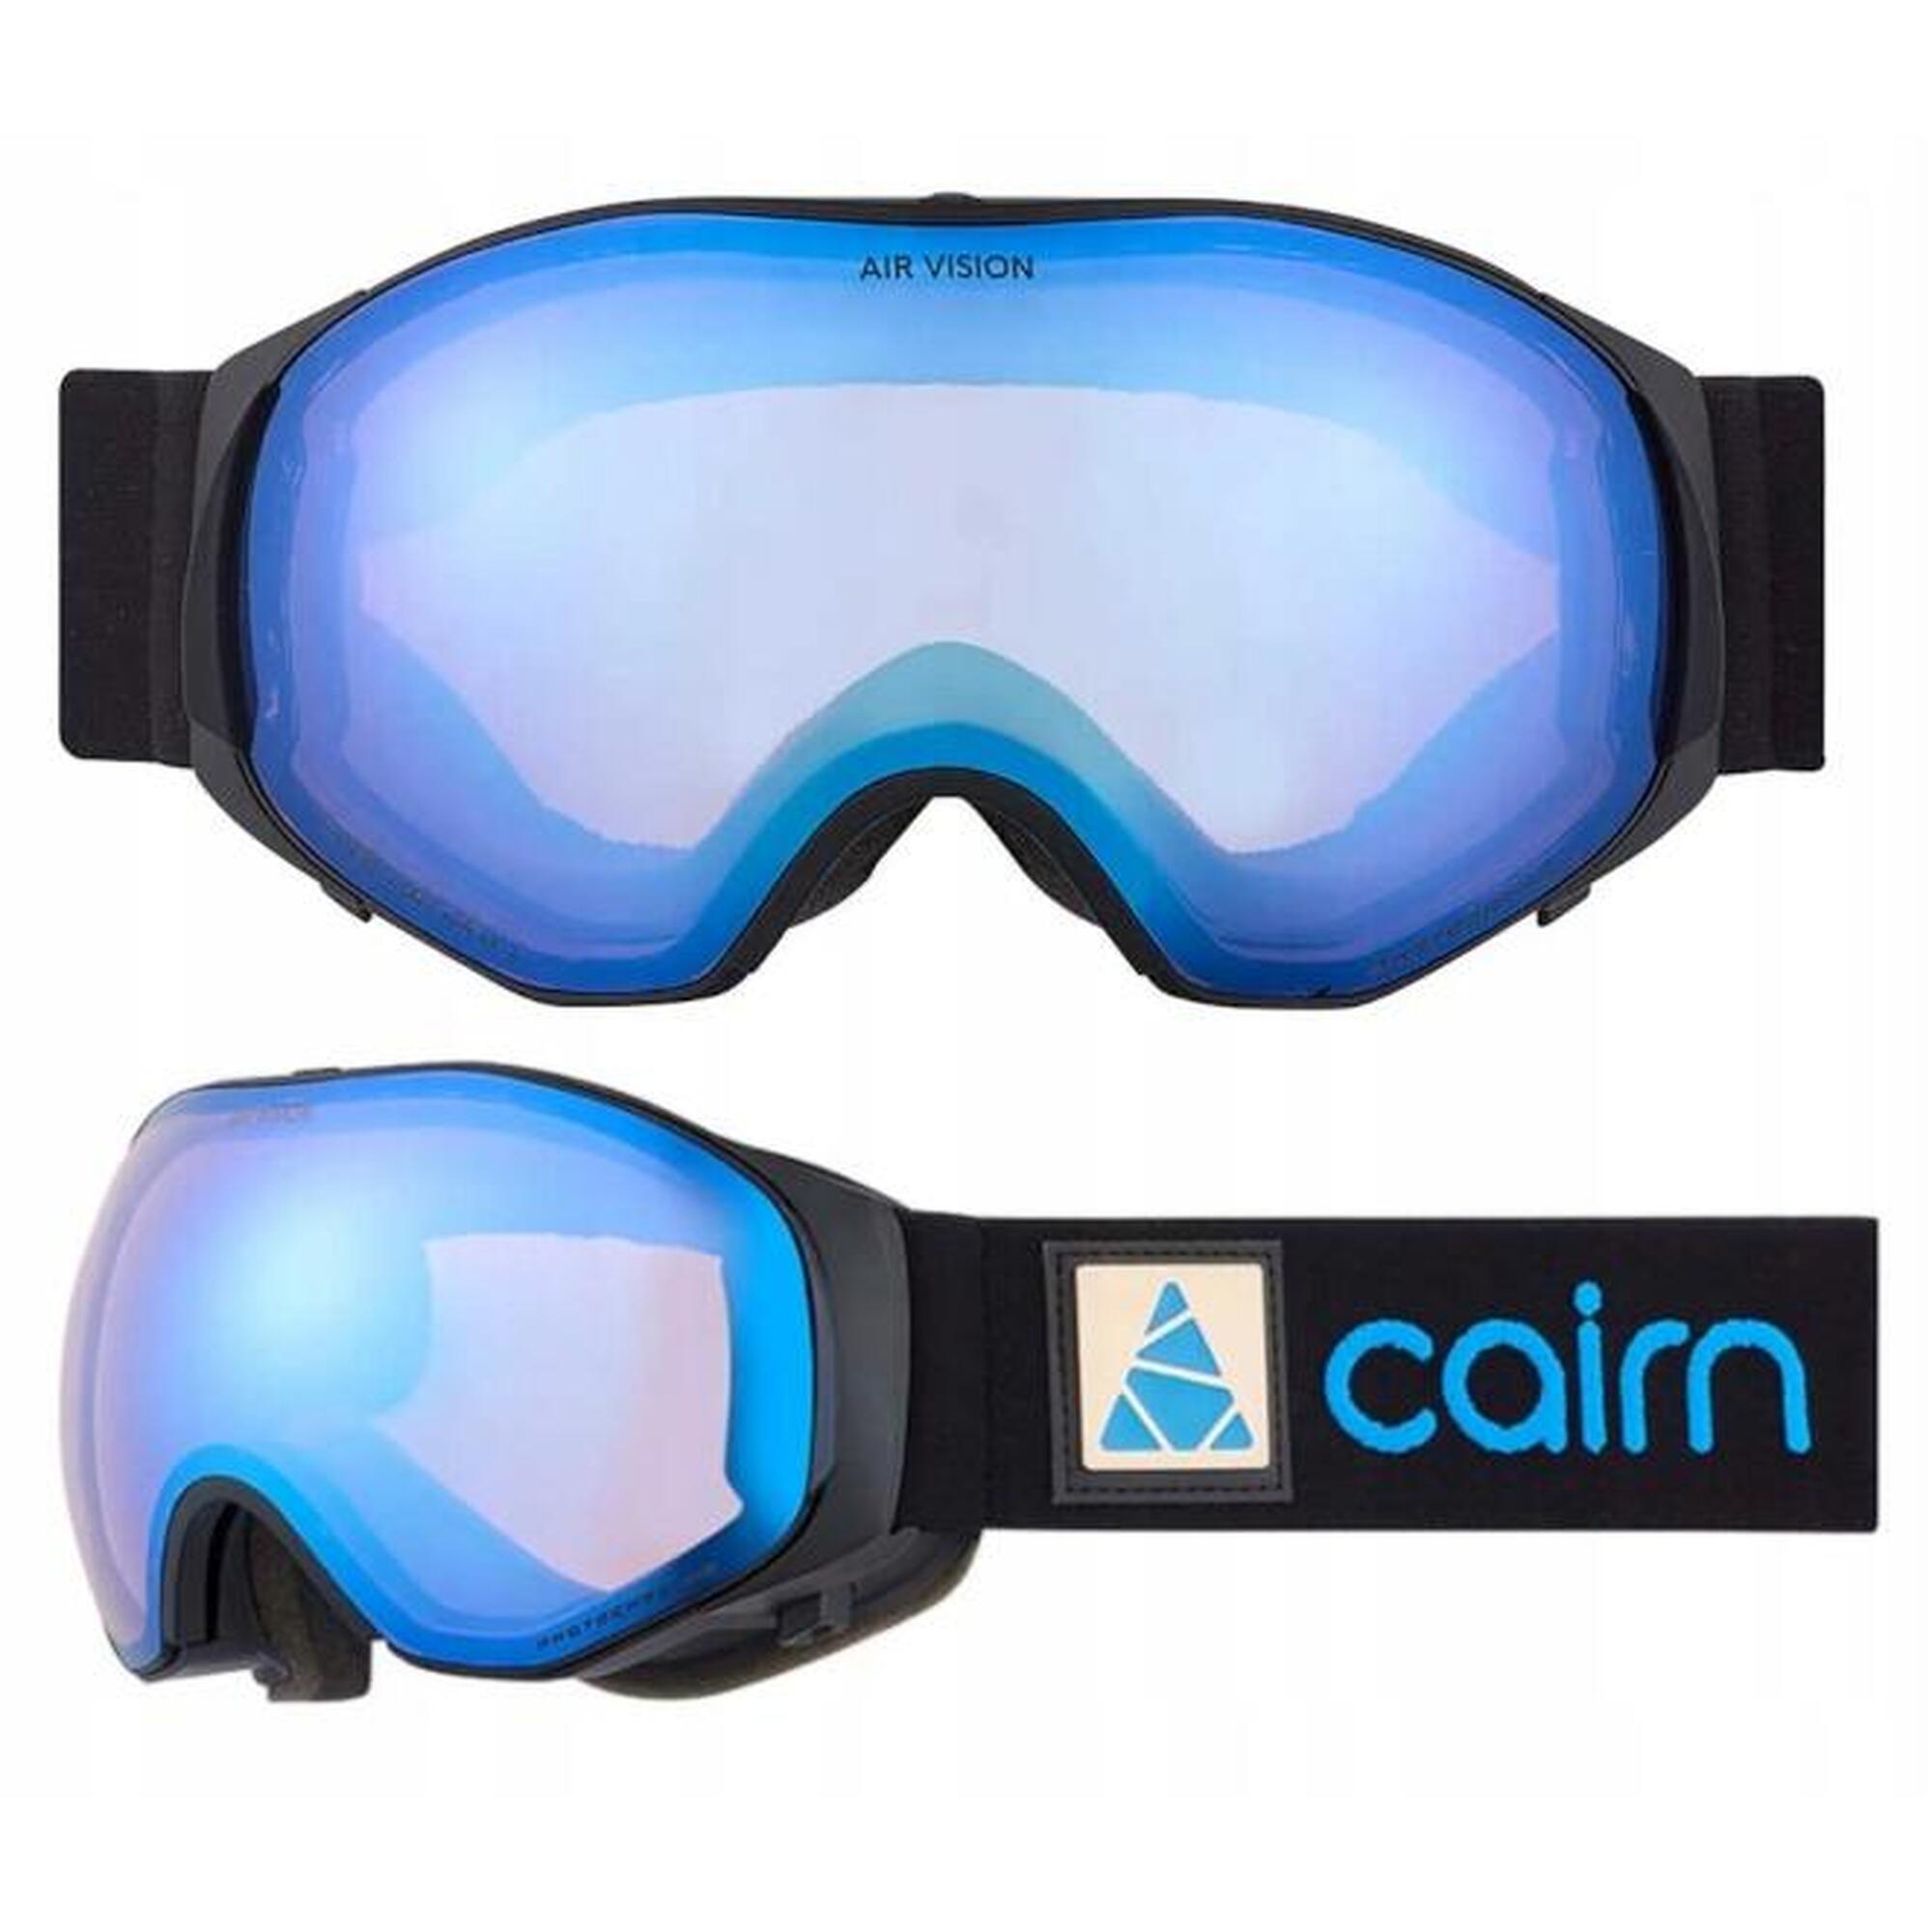 Gogle narciarskie Cairn AIR VISION photochromic